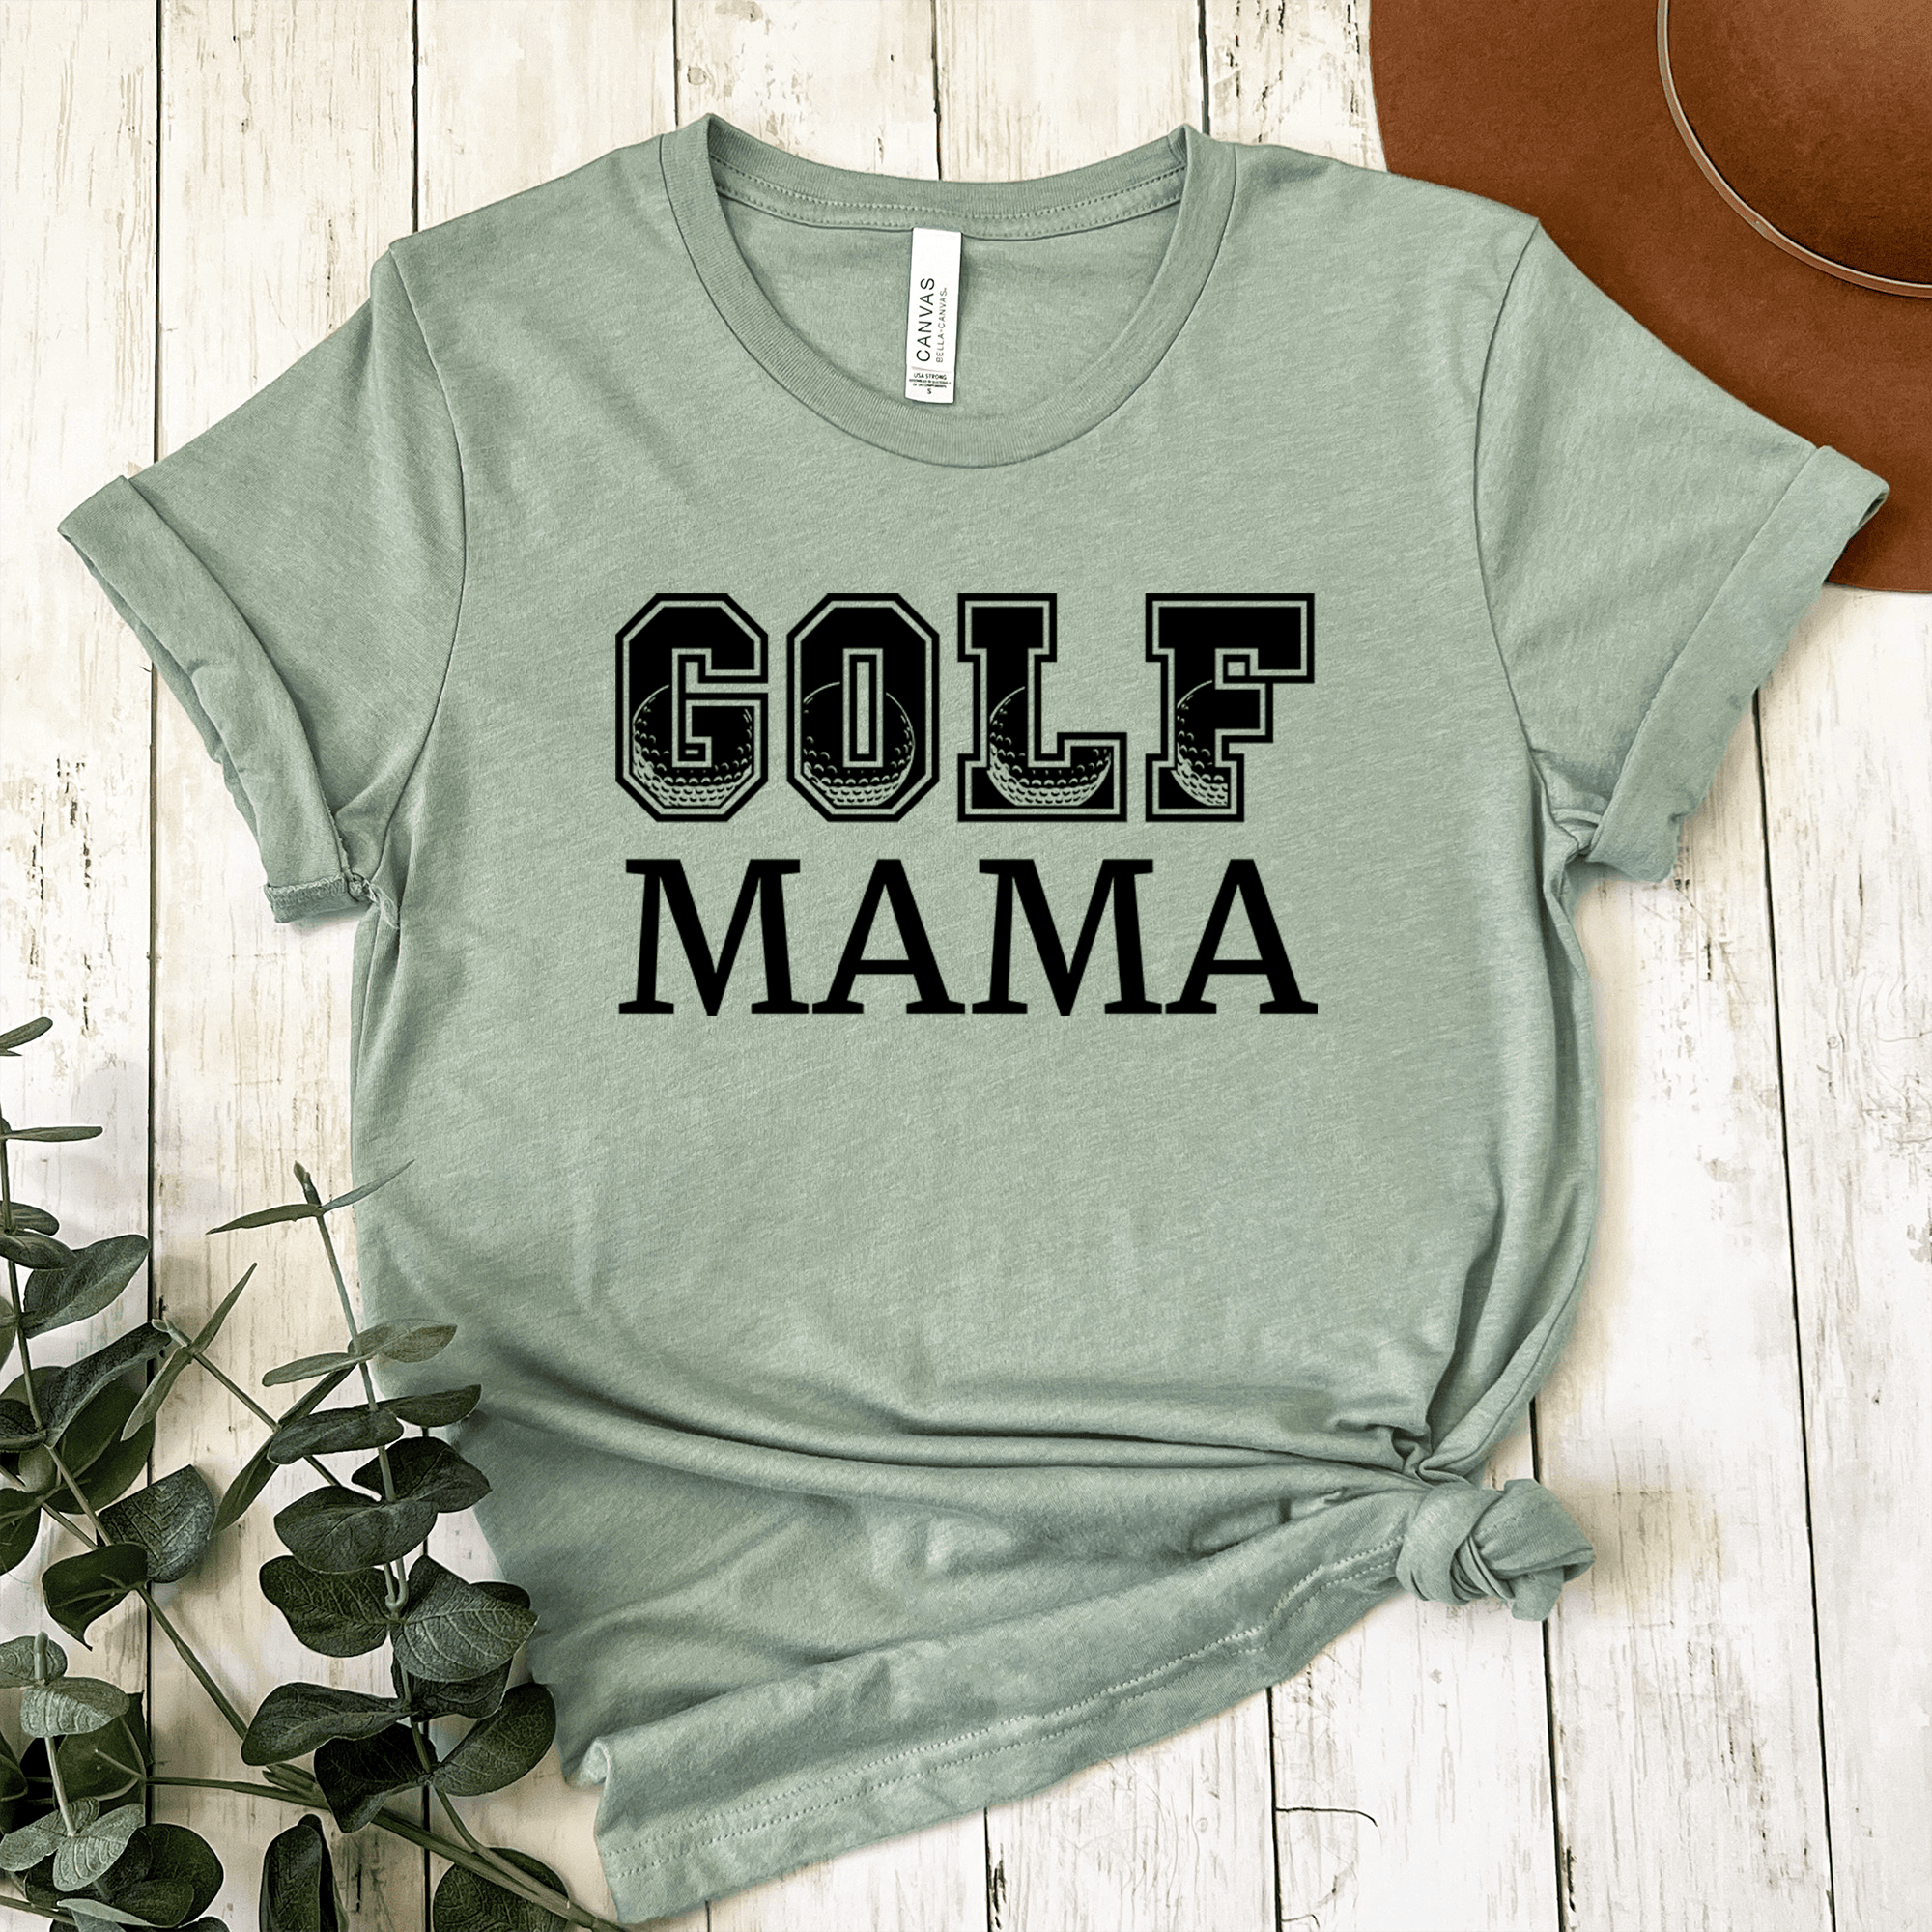 Womens Light Green T Shirt with Golf-Mama design